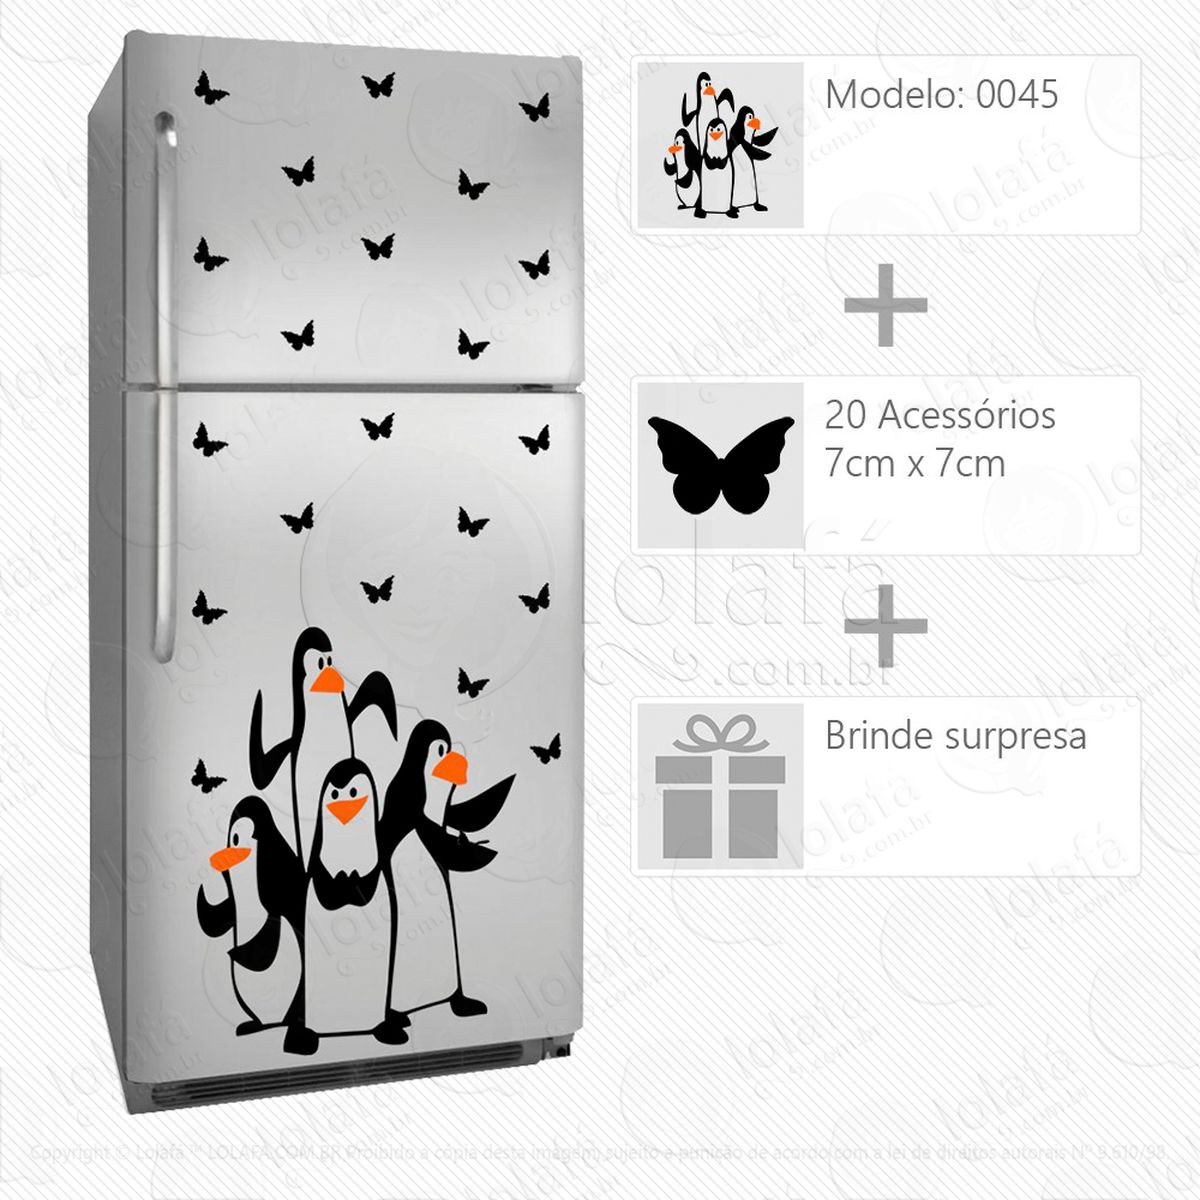 pinguins adesivo para geladeira e frigobar - mod:45